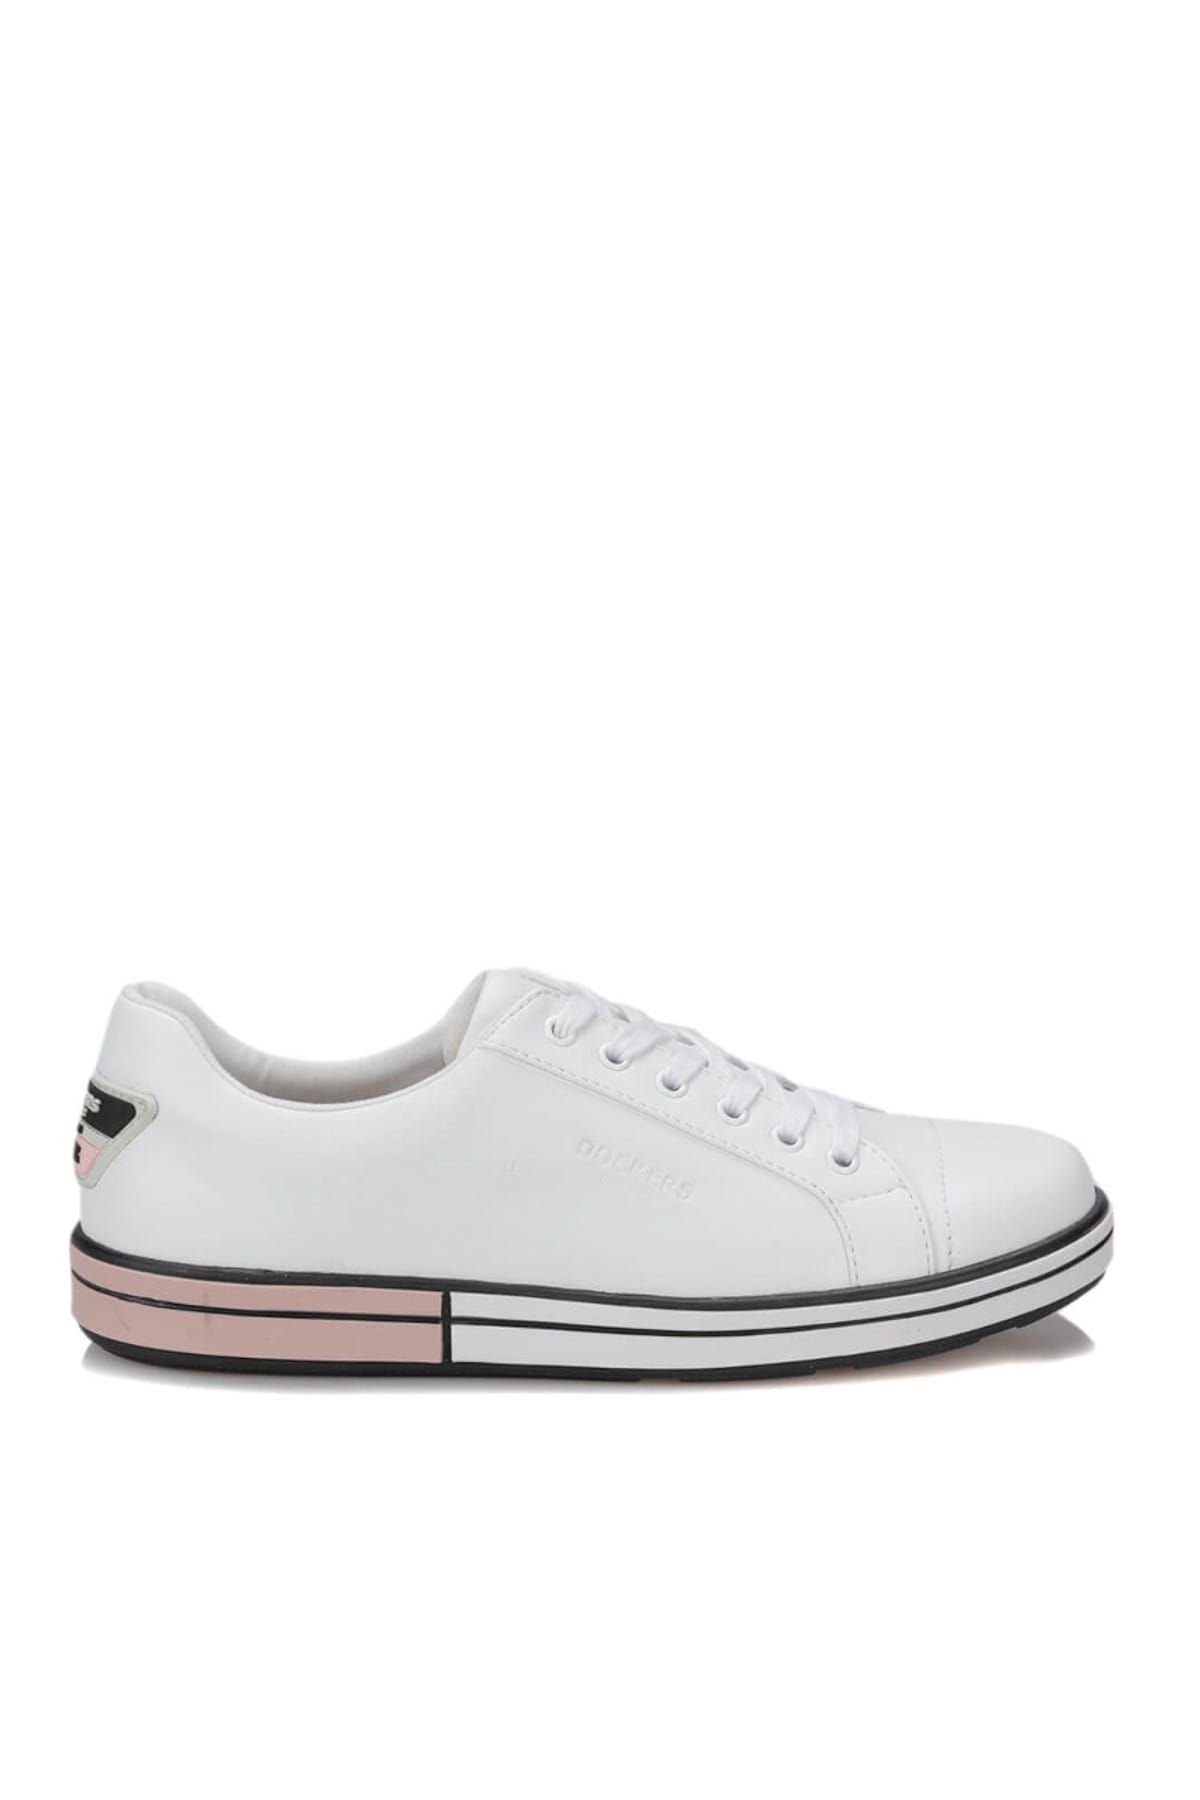 Dockers 226286 Beyaz Kadın Sneaker Ayakkabı 100367812